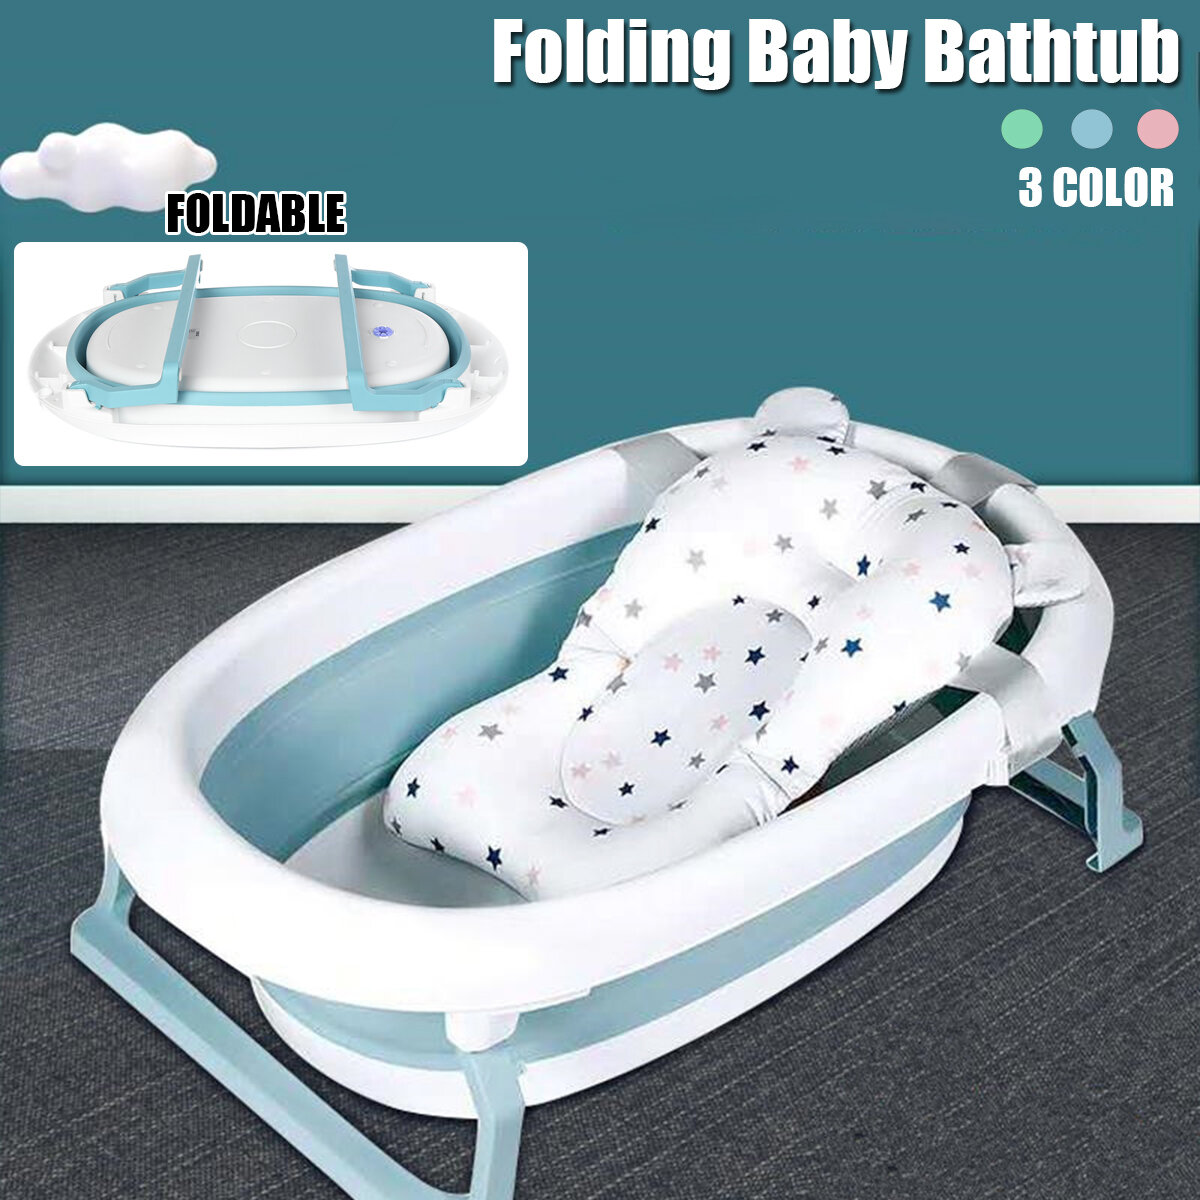 Zusammenklappbare Baby-Badewanne für Neugeborene, zusammenklappbar, mit Kissen, Blau, Grün, Rosa